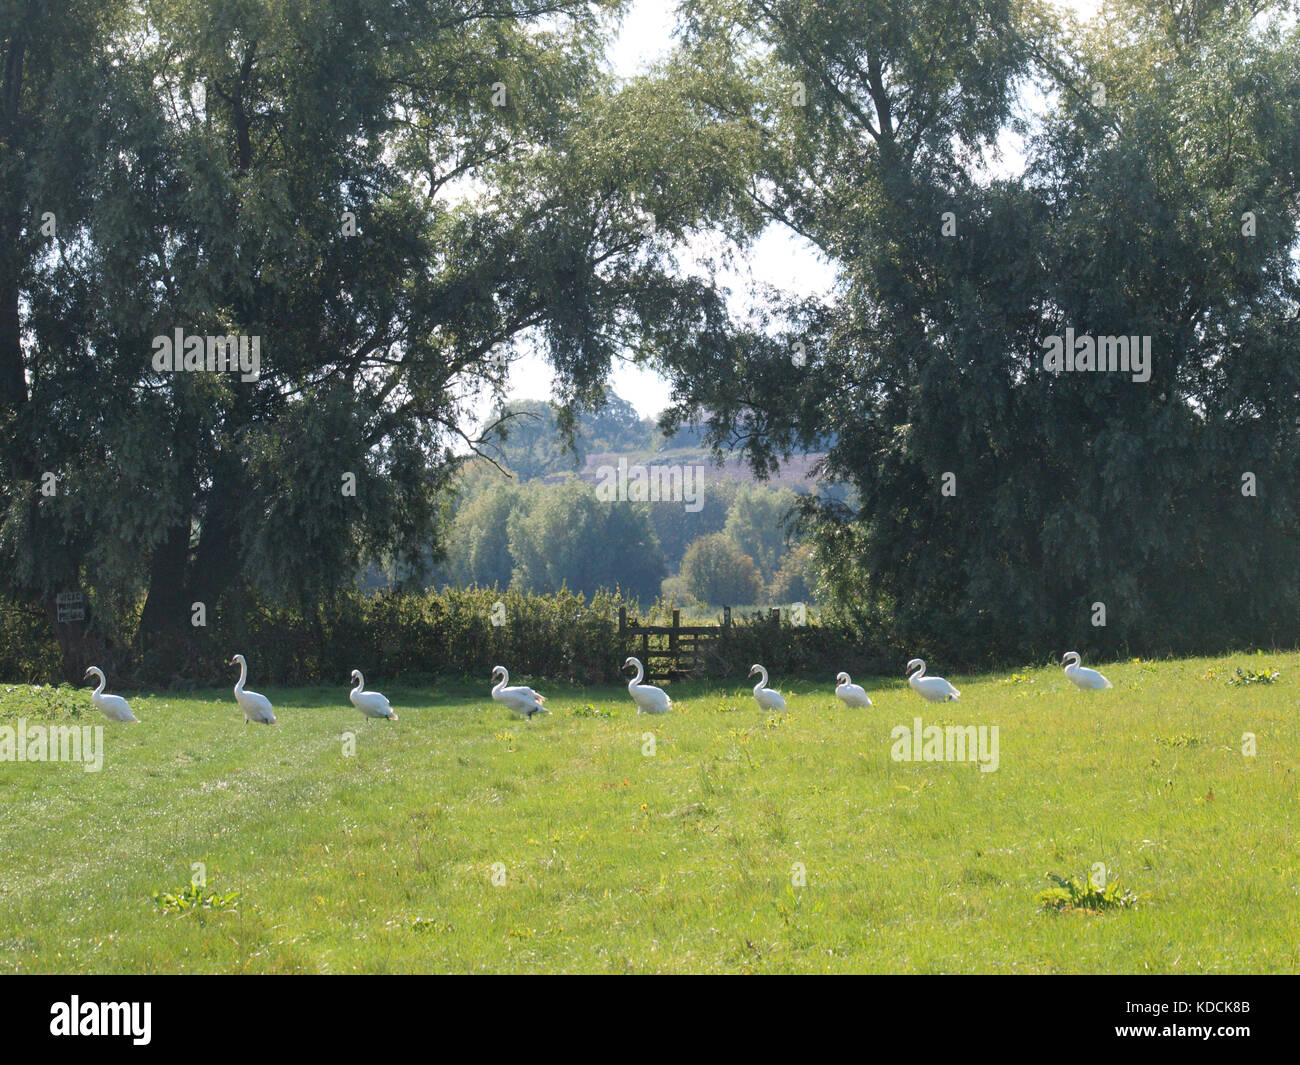 A flock of Mute Swans walking across a field in single file, UK Stock Photo